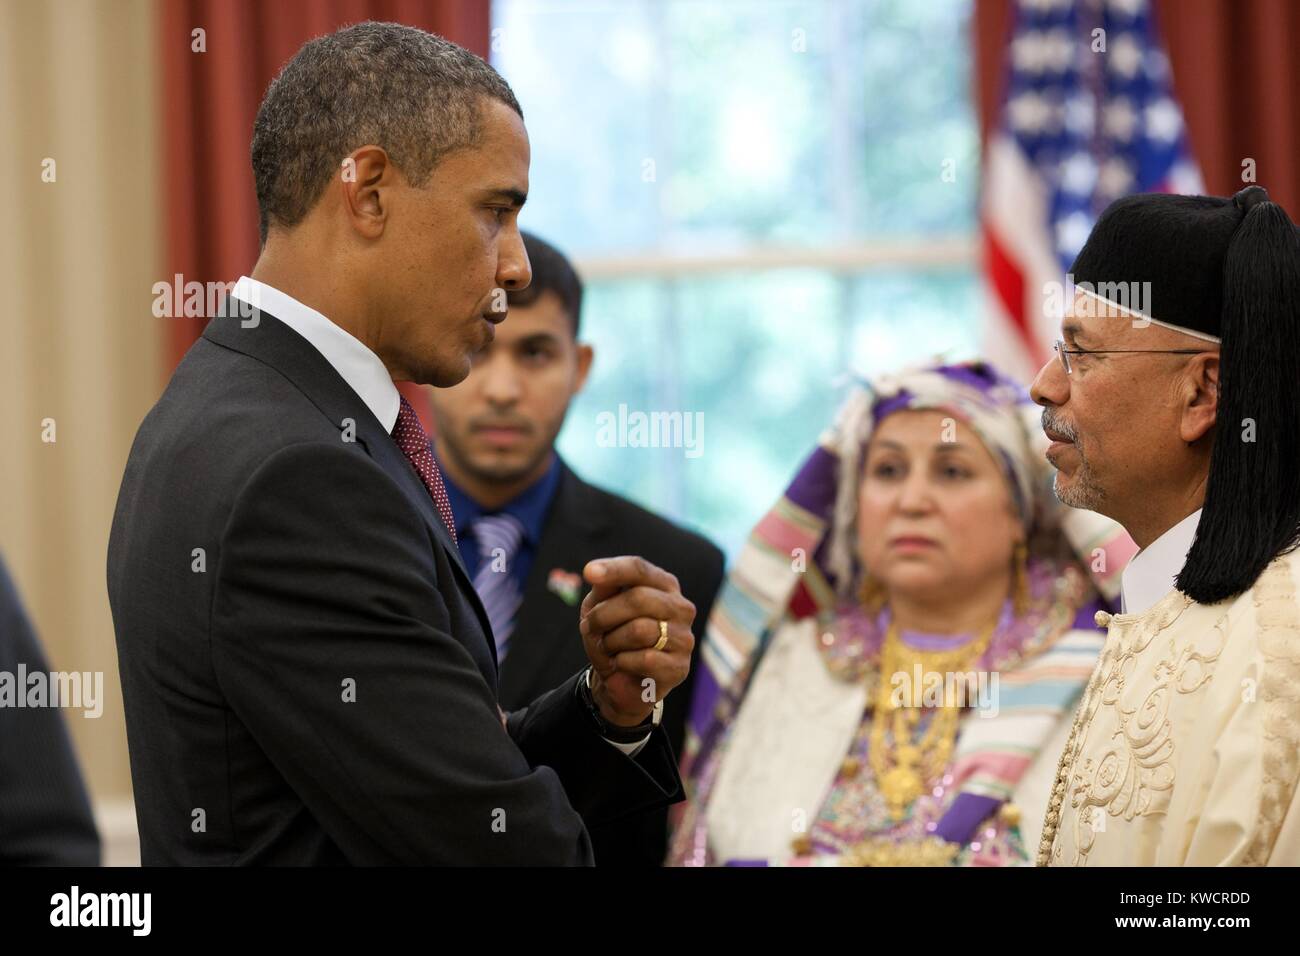 Le président Barack Obama parle avec l'Ambassadeur libyen Ali Suleiman Aujali et sa famille. Lors de la cérémonie d'accréditation de l'Ambassadeur dans le bureau ovale, 9 septembre 2011 (BSLOC 2015 3 187) Banque D'Images